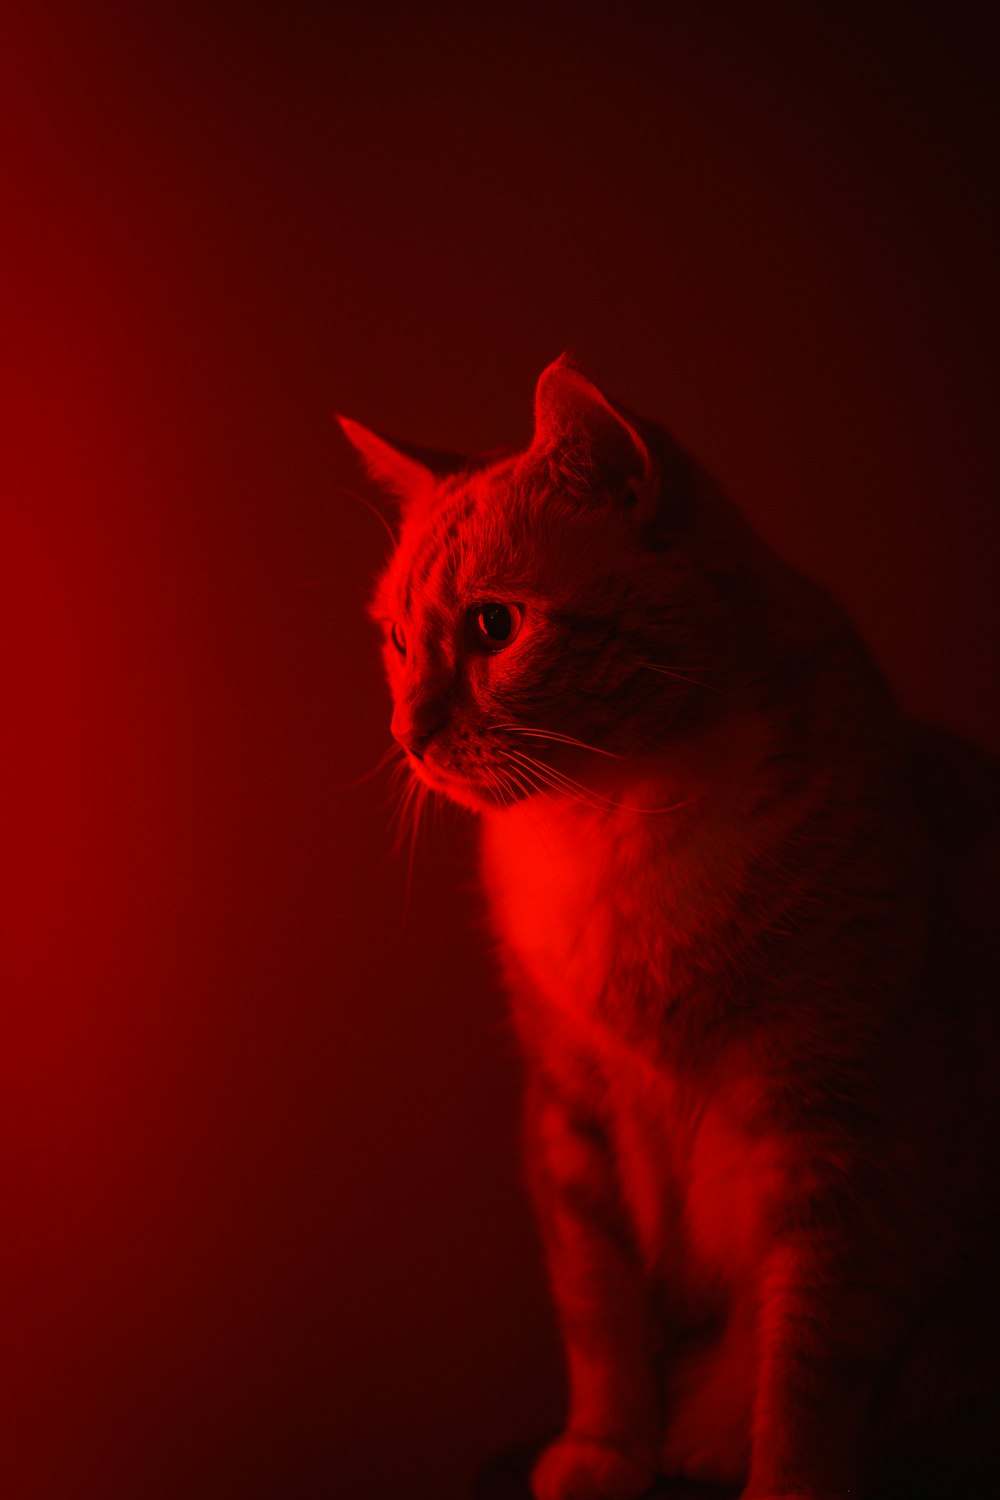 Про red cat. Red Cat. Red Cat обои на телефон. Красно белая кошка. Red Cat apeirophobia.